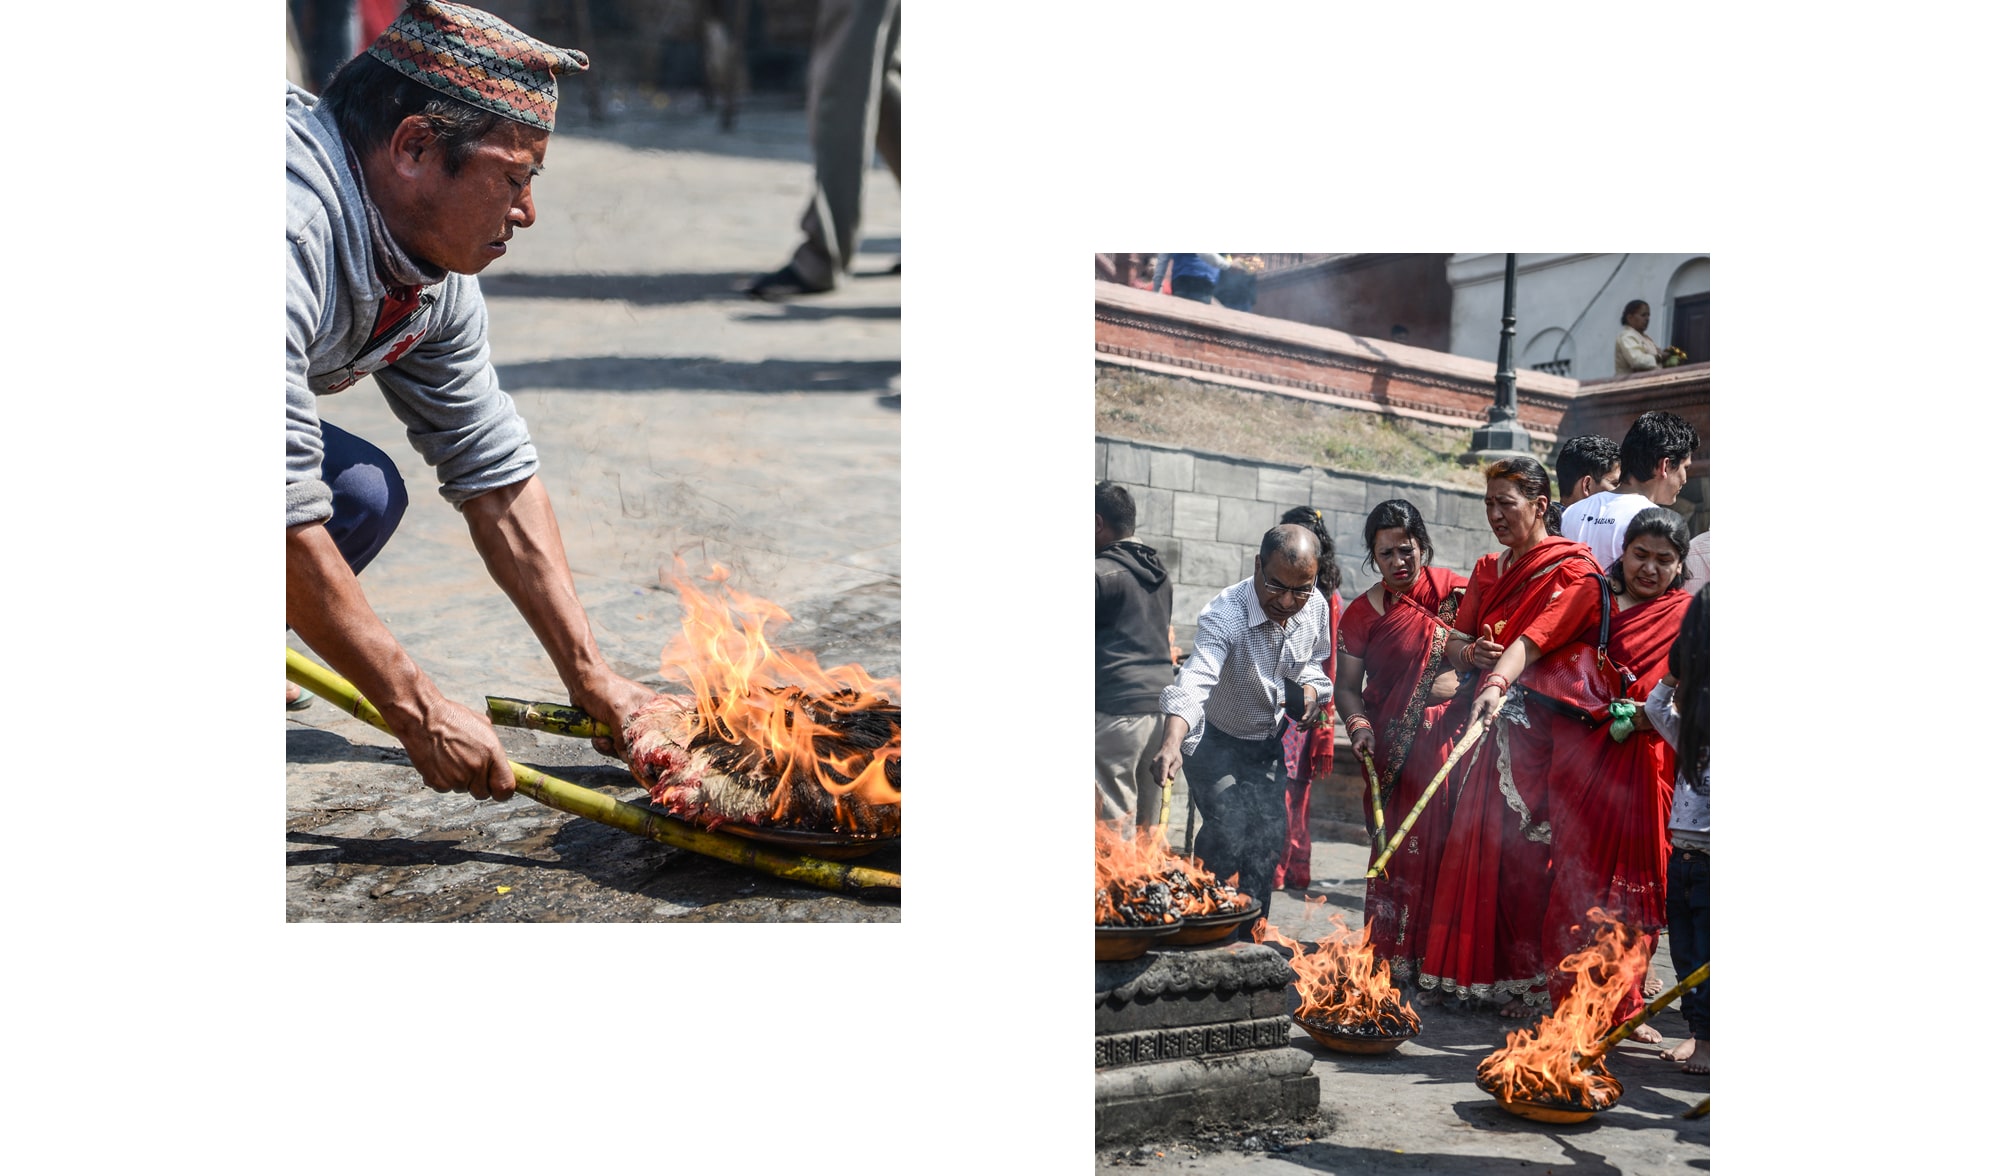 Cérémonie avec du feu au Népal